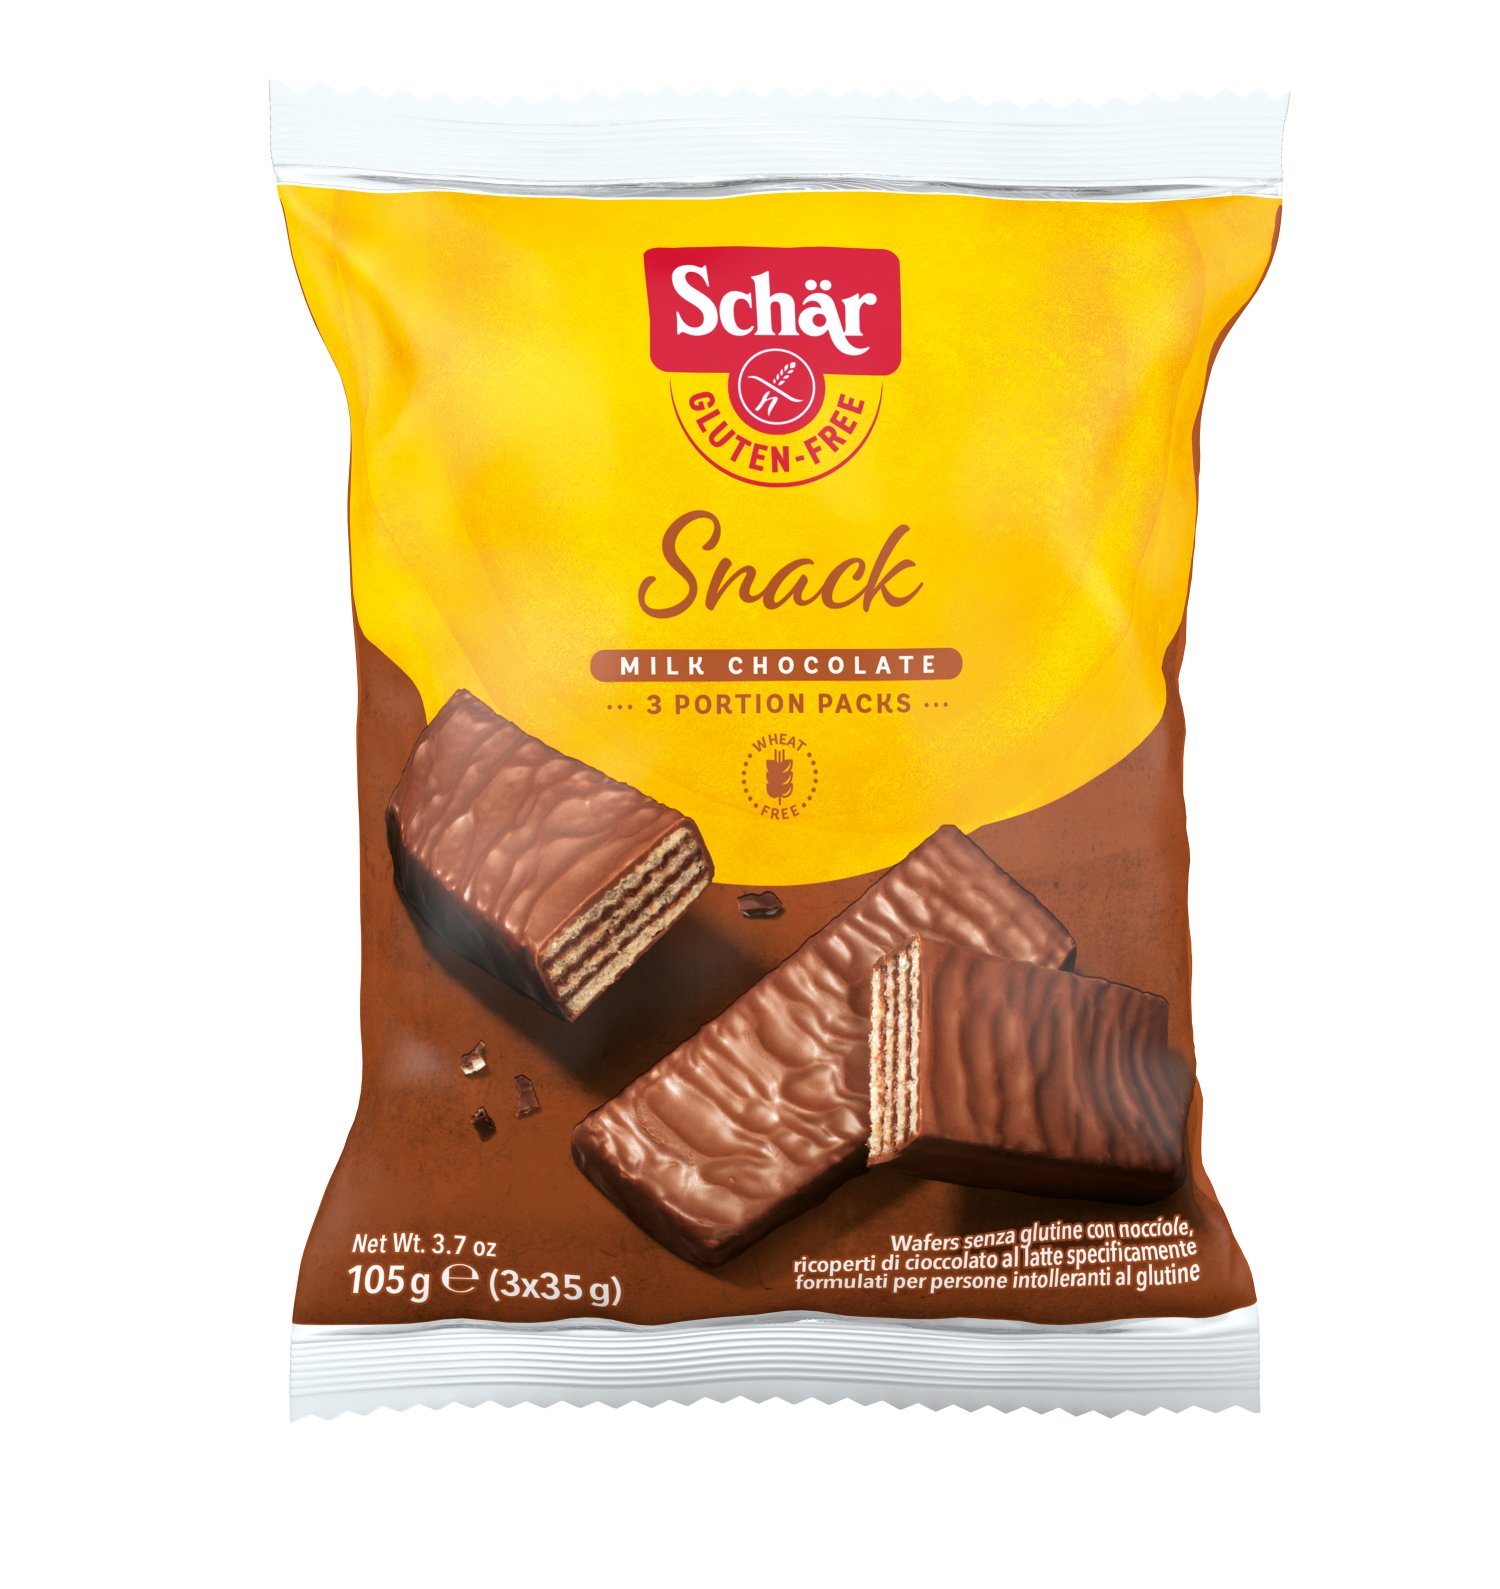 Schar Snack 3X35 grÇikolata Kaplı Fındıklı Gofret